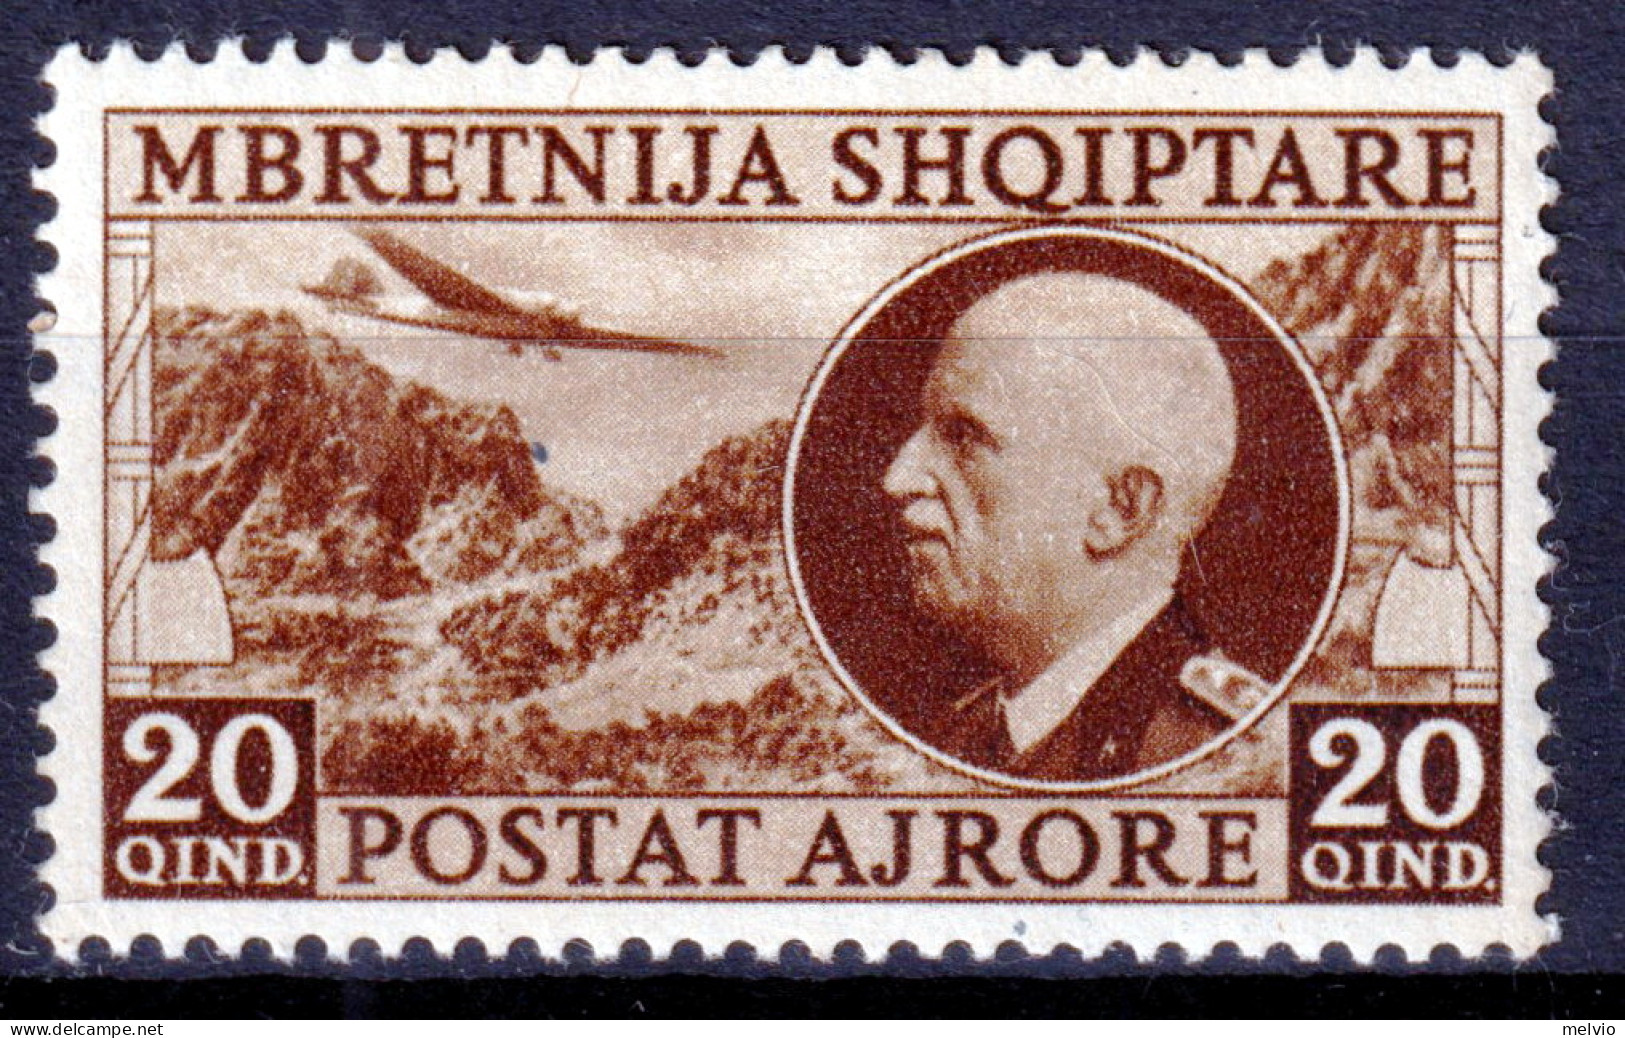 1939 (MNH=**) ALBANIA Occupazione Italiana PA Lire 20 Nuovo Gomma Originale Ed I - Albanie